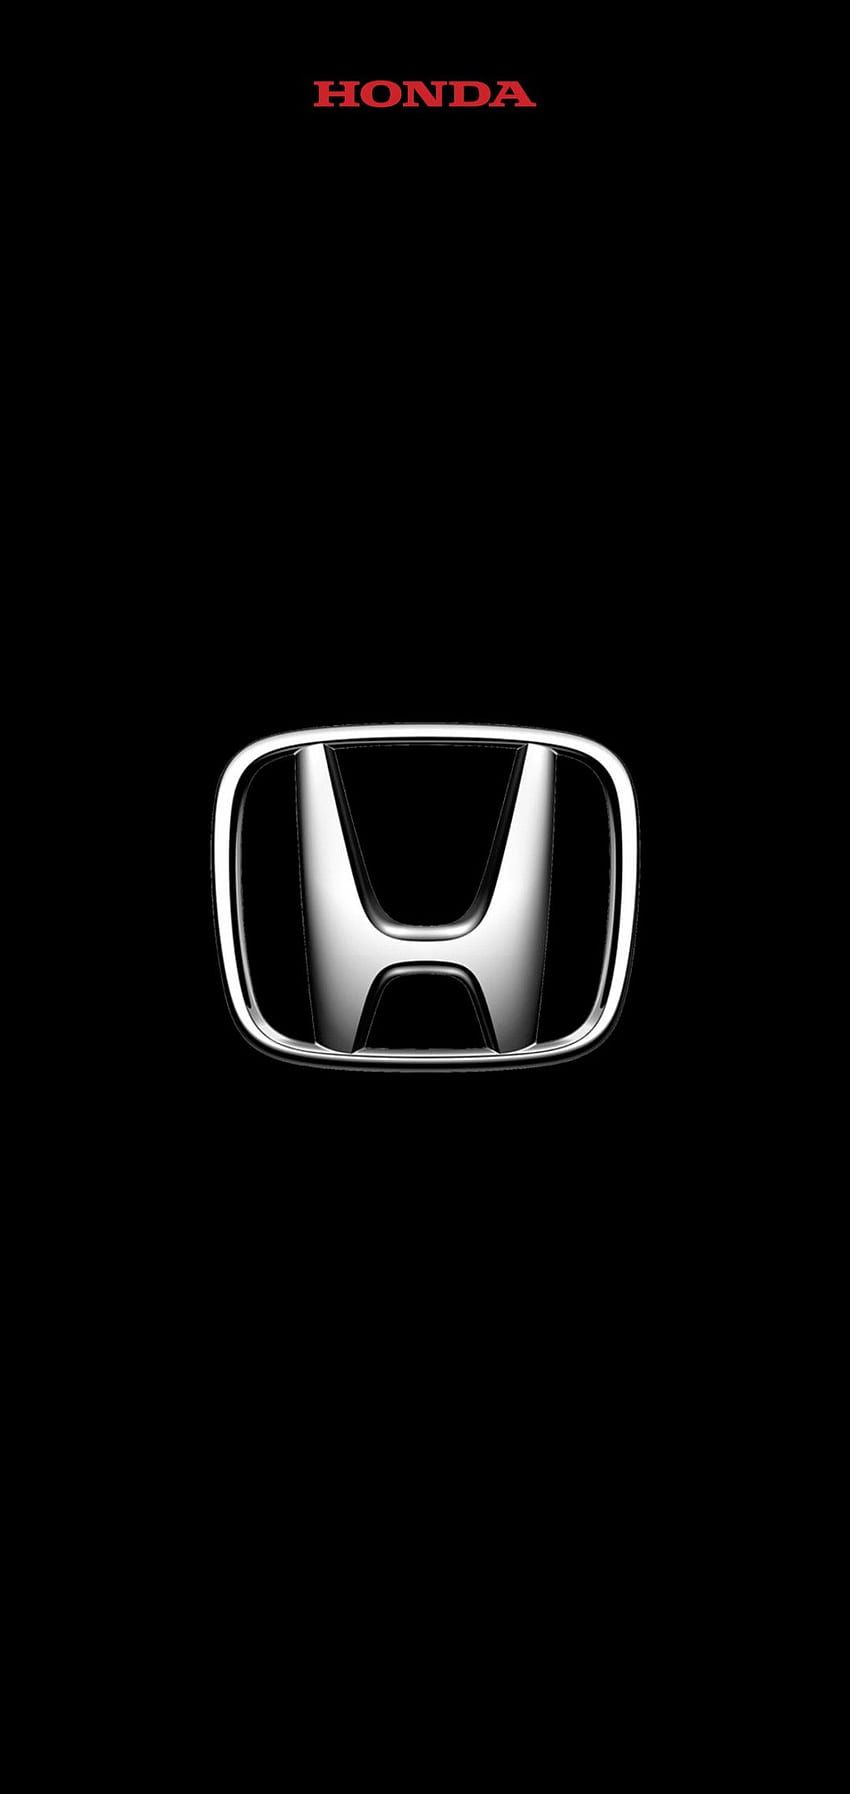 Néo On Honda Insight 2011 2014 . Honda Civic Car, Honda Logo, Honda Insight, Honda Logo iPhone HD phone wallpaper